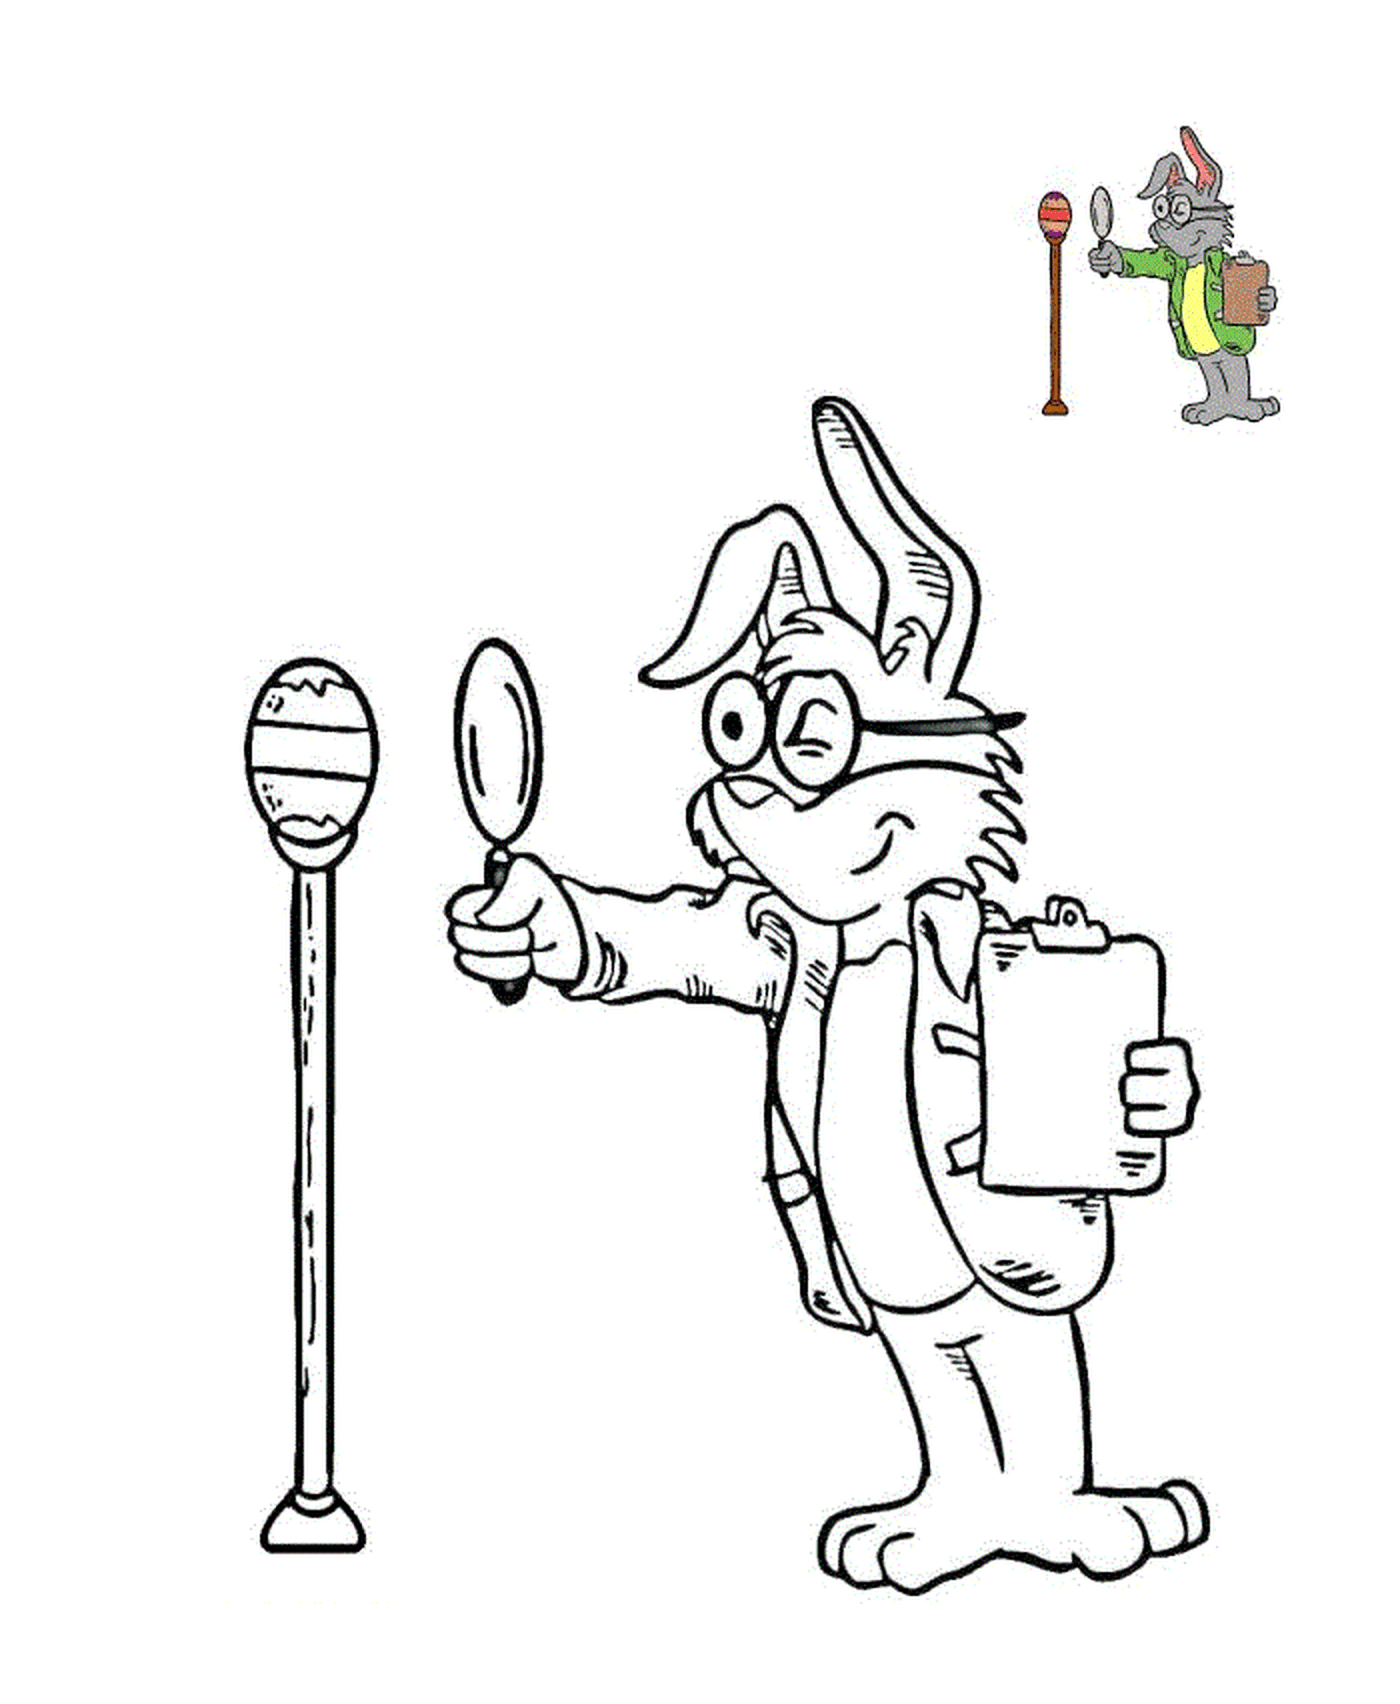  Инспектор Кролик инспектирует пасхальное яйцо 